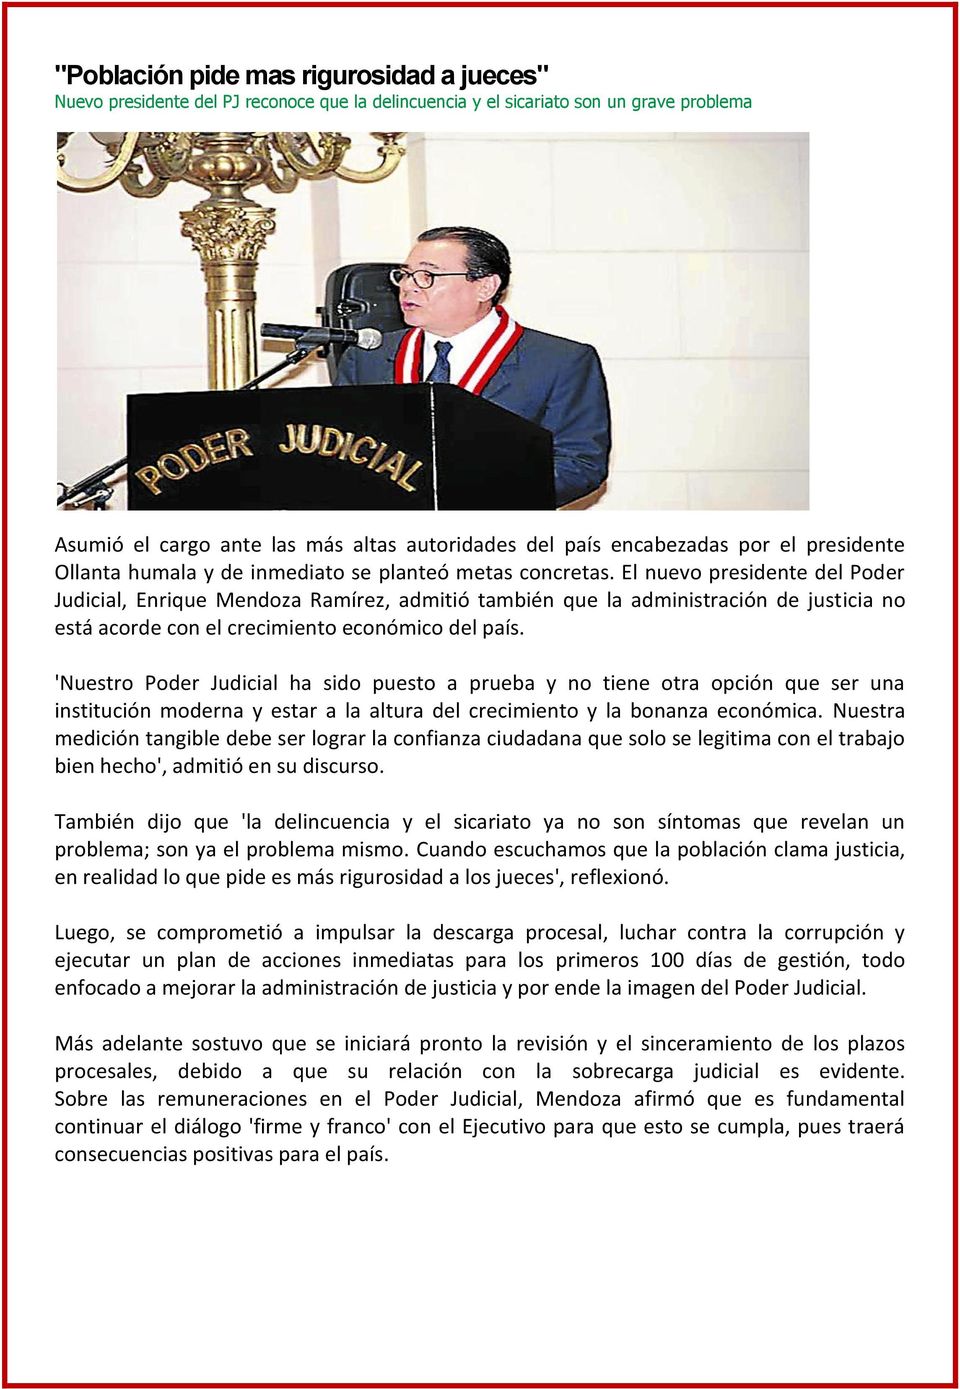 El nuevo presidente del Poder Judicial, Enrique Mendoza Ramírez, admitió también que la administración de justicia no está acorde con el crecimiento económico del país.